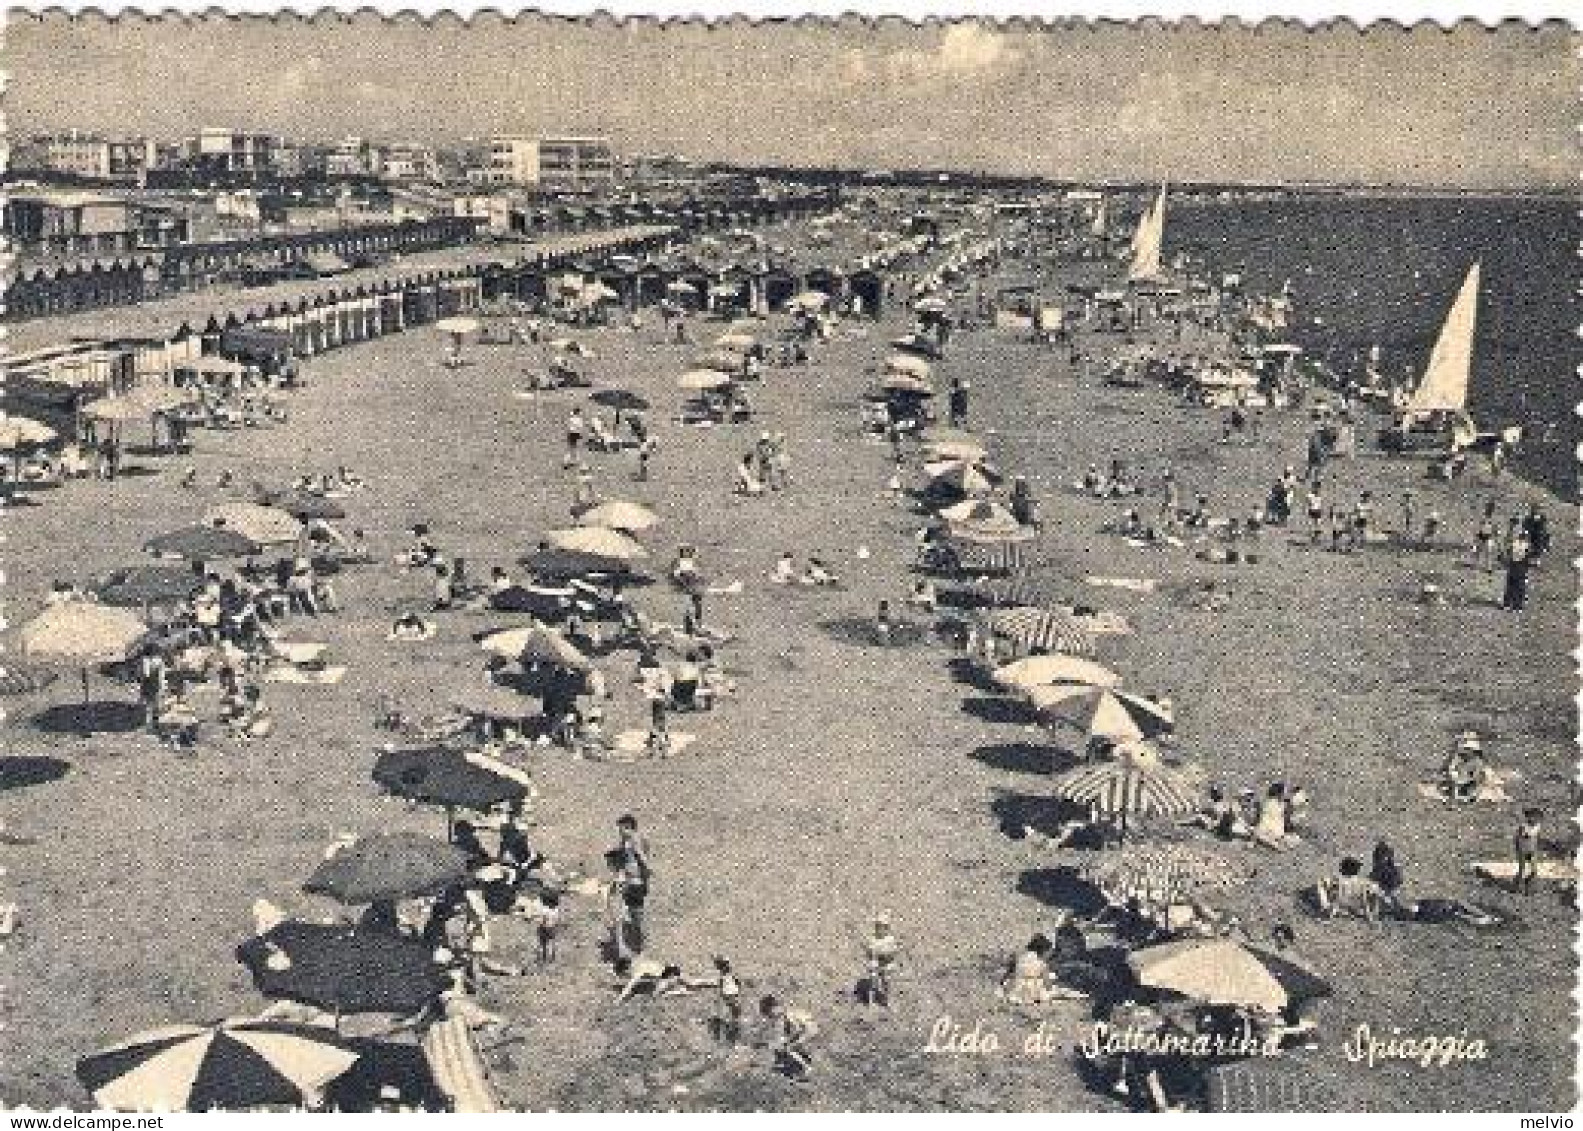 1960-cartolina Al Lido Di Sottomarina Spiaggia Affrancata L.15 Spedizione Dei Mi - Venezia (Venedig)